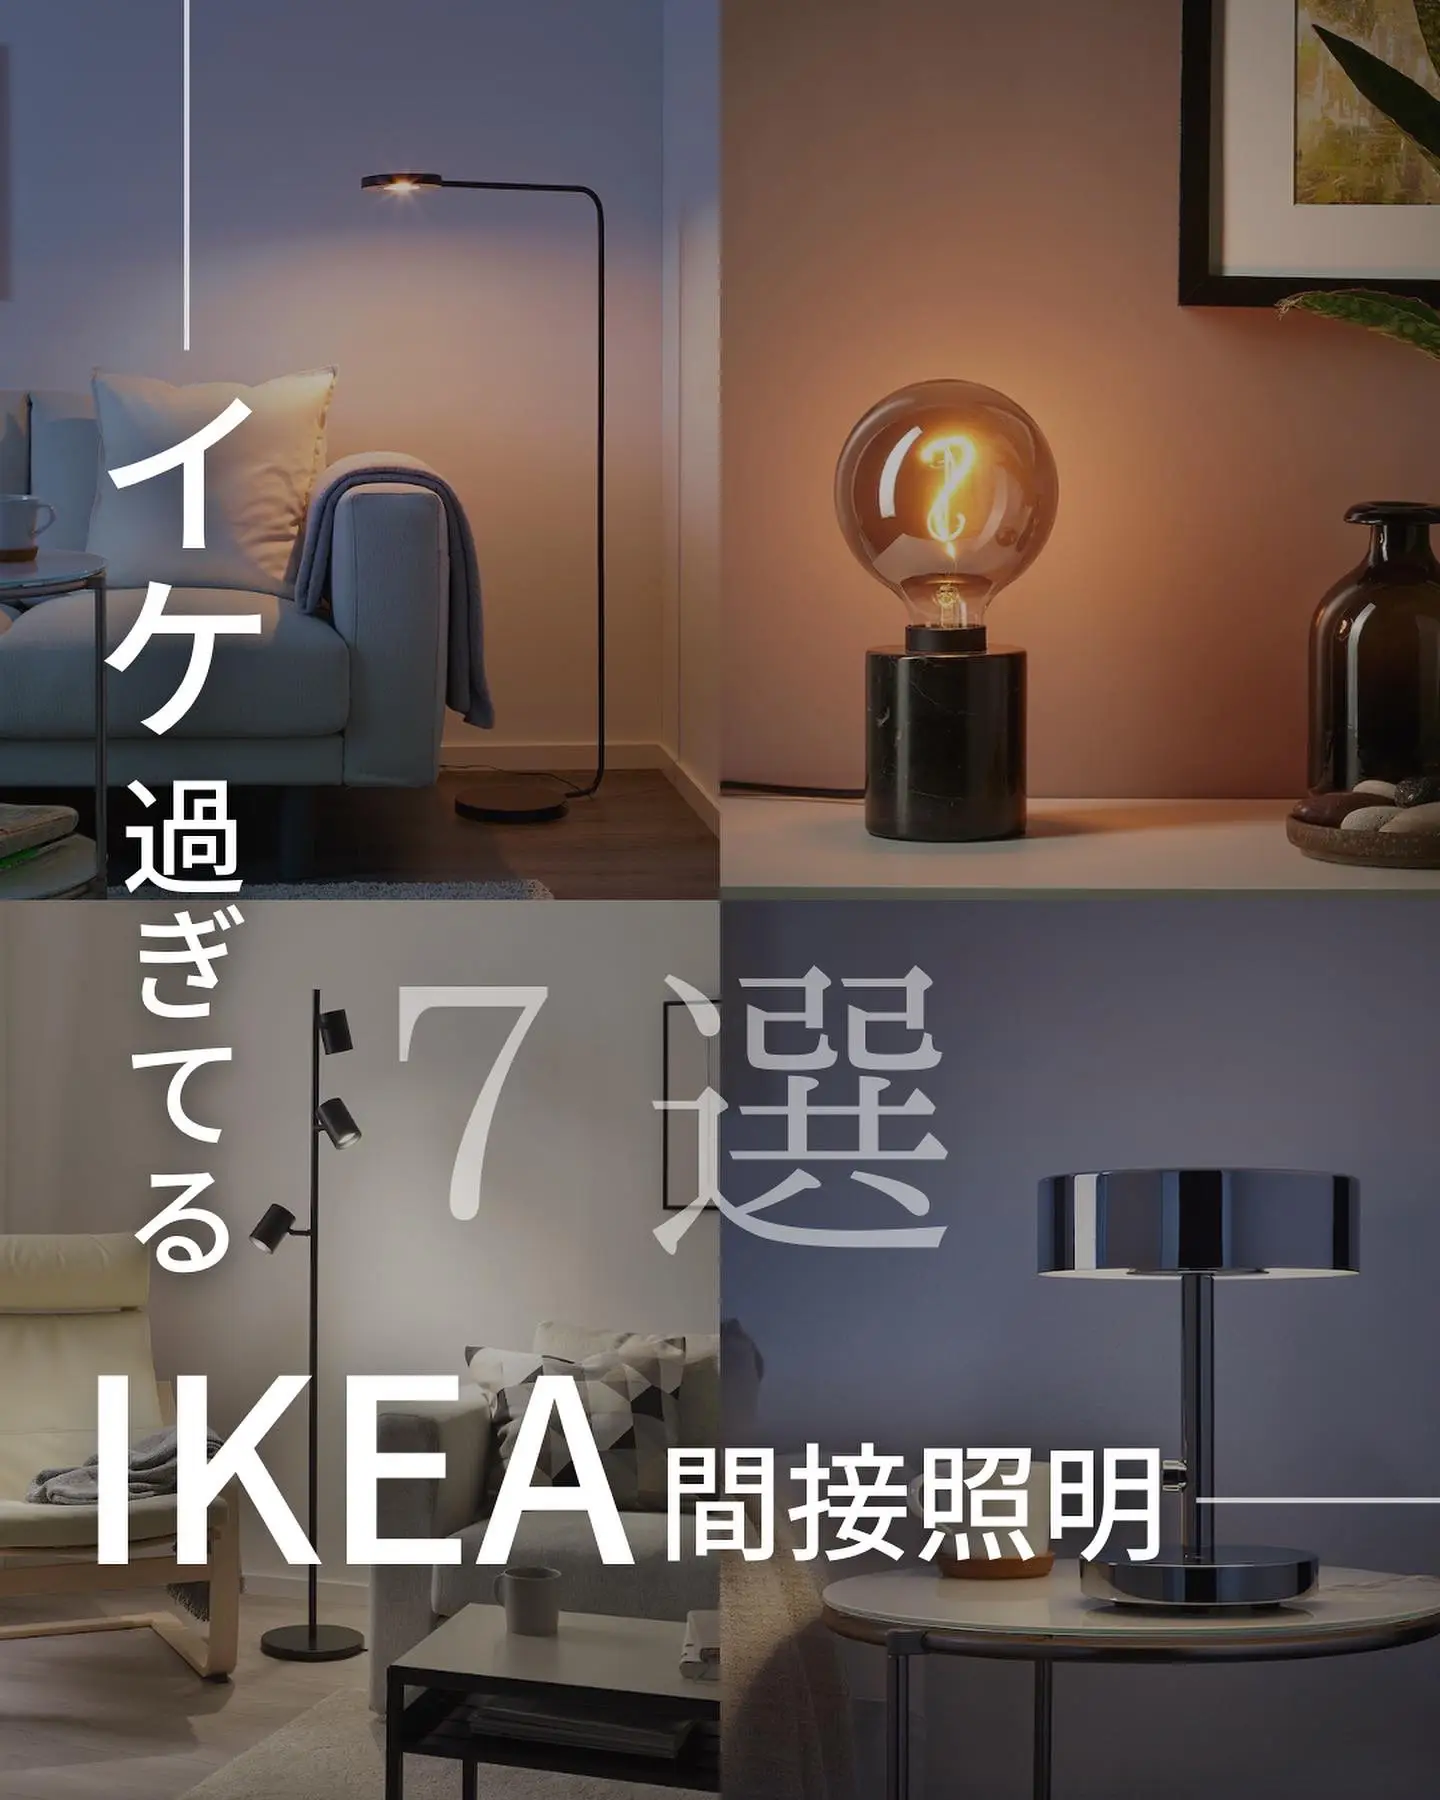 IKEA PS 2017 Lamp 間接照明 フロアスタンド - フロアスタンド